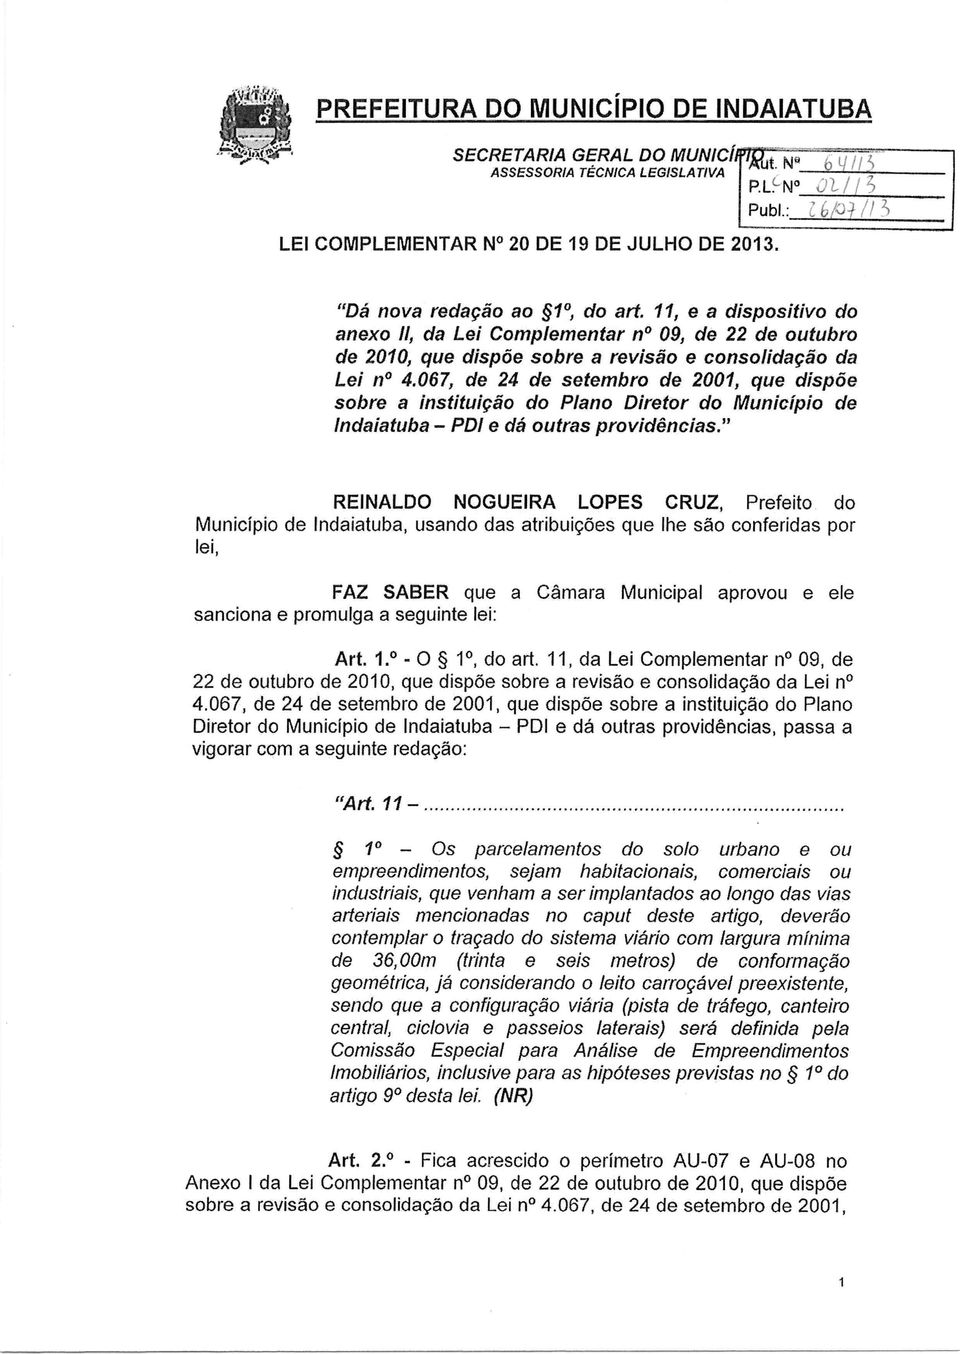 067, de 24 de setembro de 2001, que dispõe sobre a instituição do Plano Diretor do Município de lndaiatuba PDI e dá outras providências.